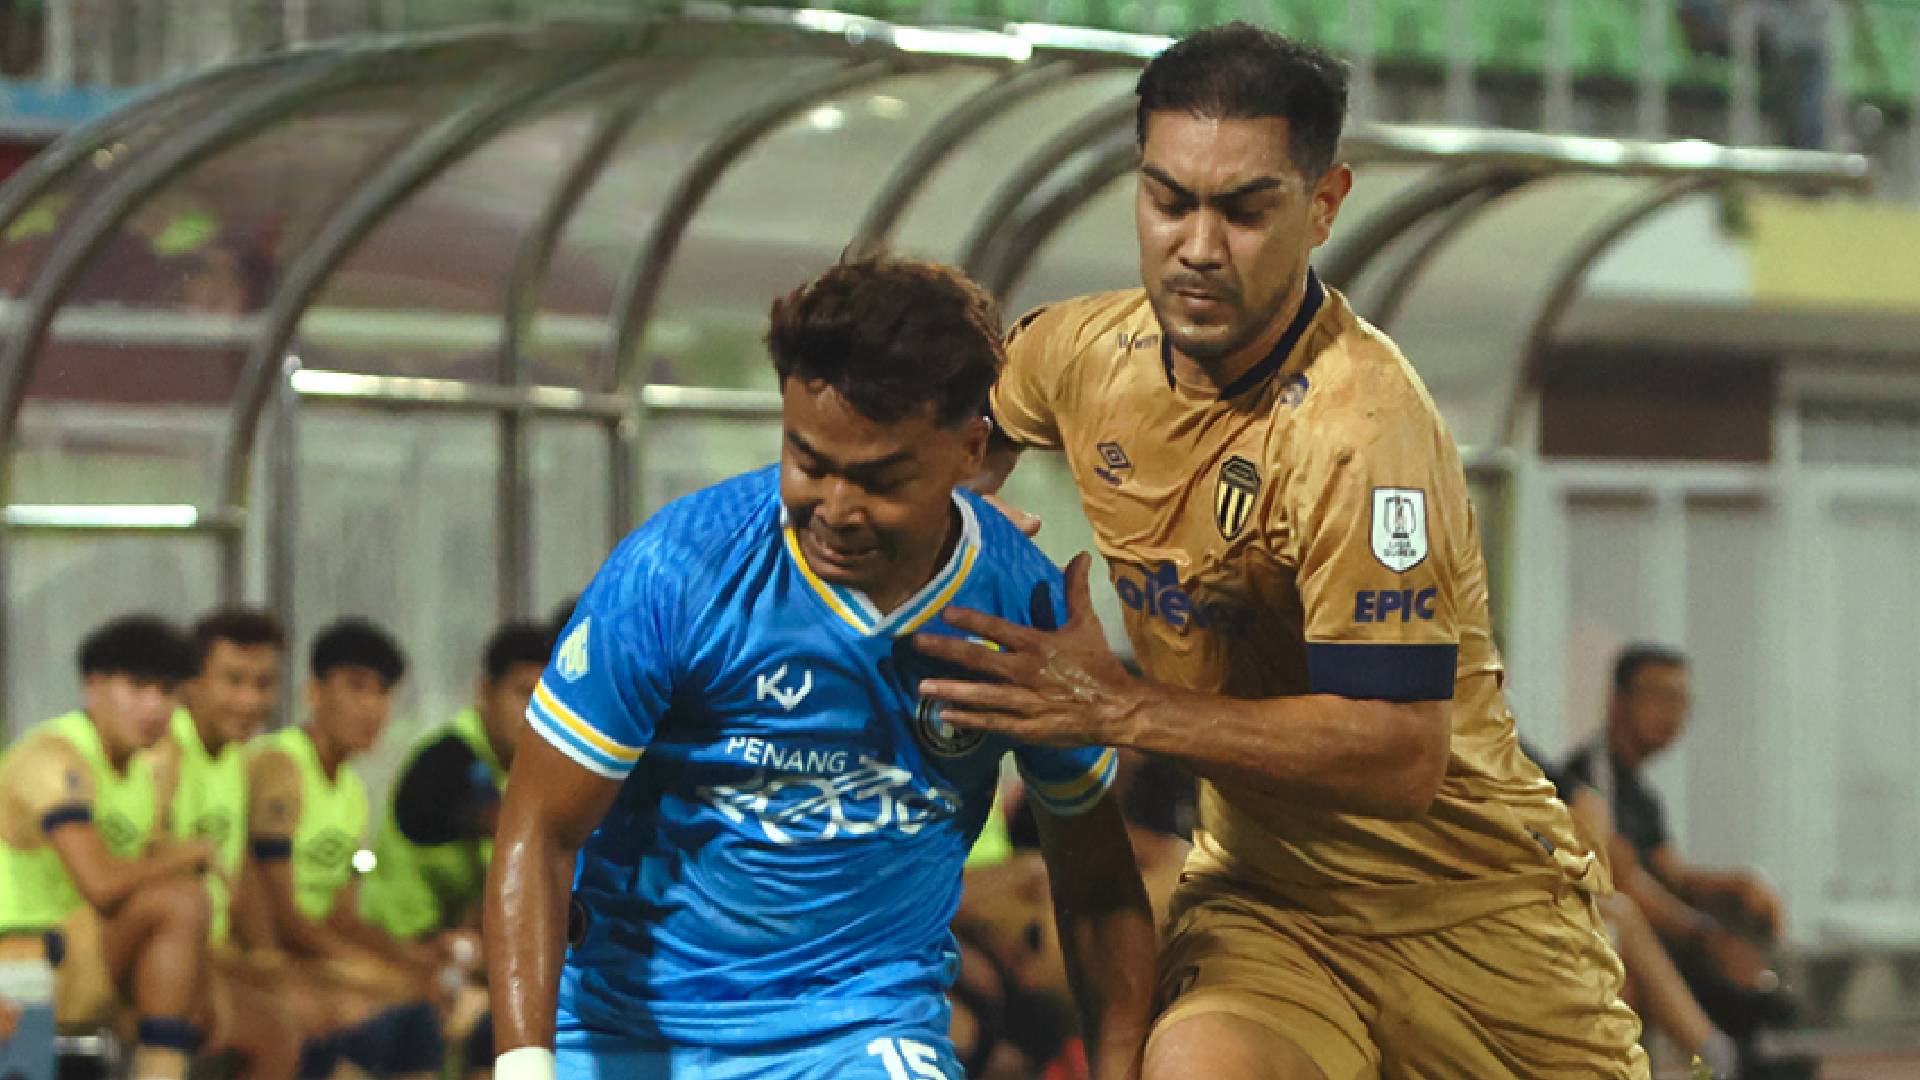 Liga Super: Gol Saat Akhir Penang Buat Terengganu Kecewa